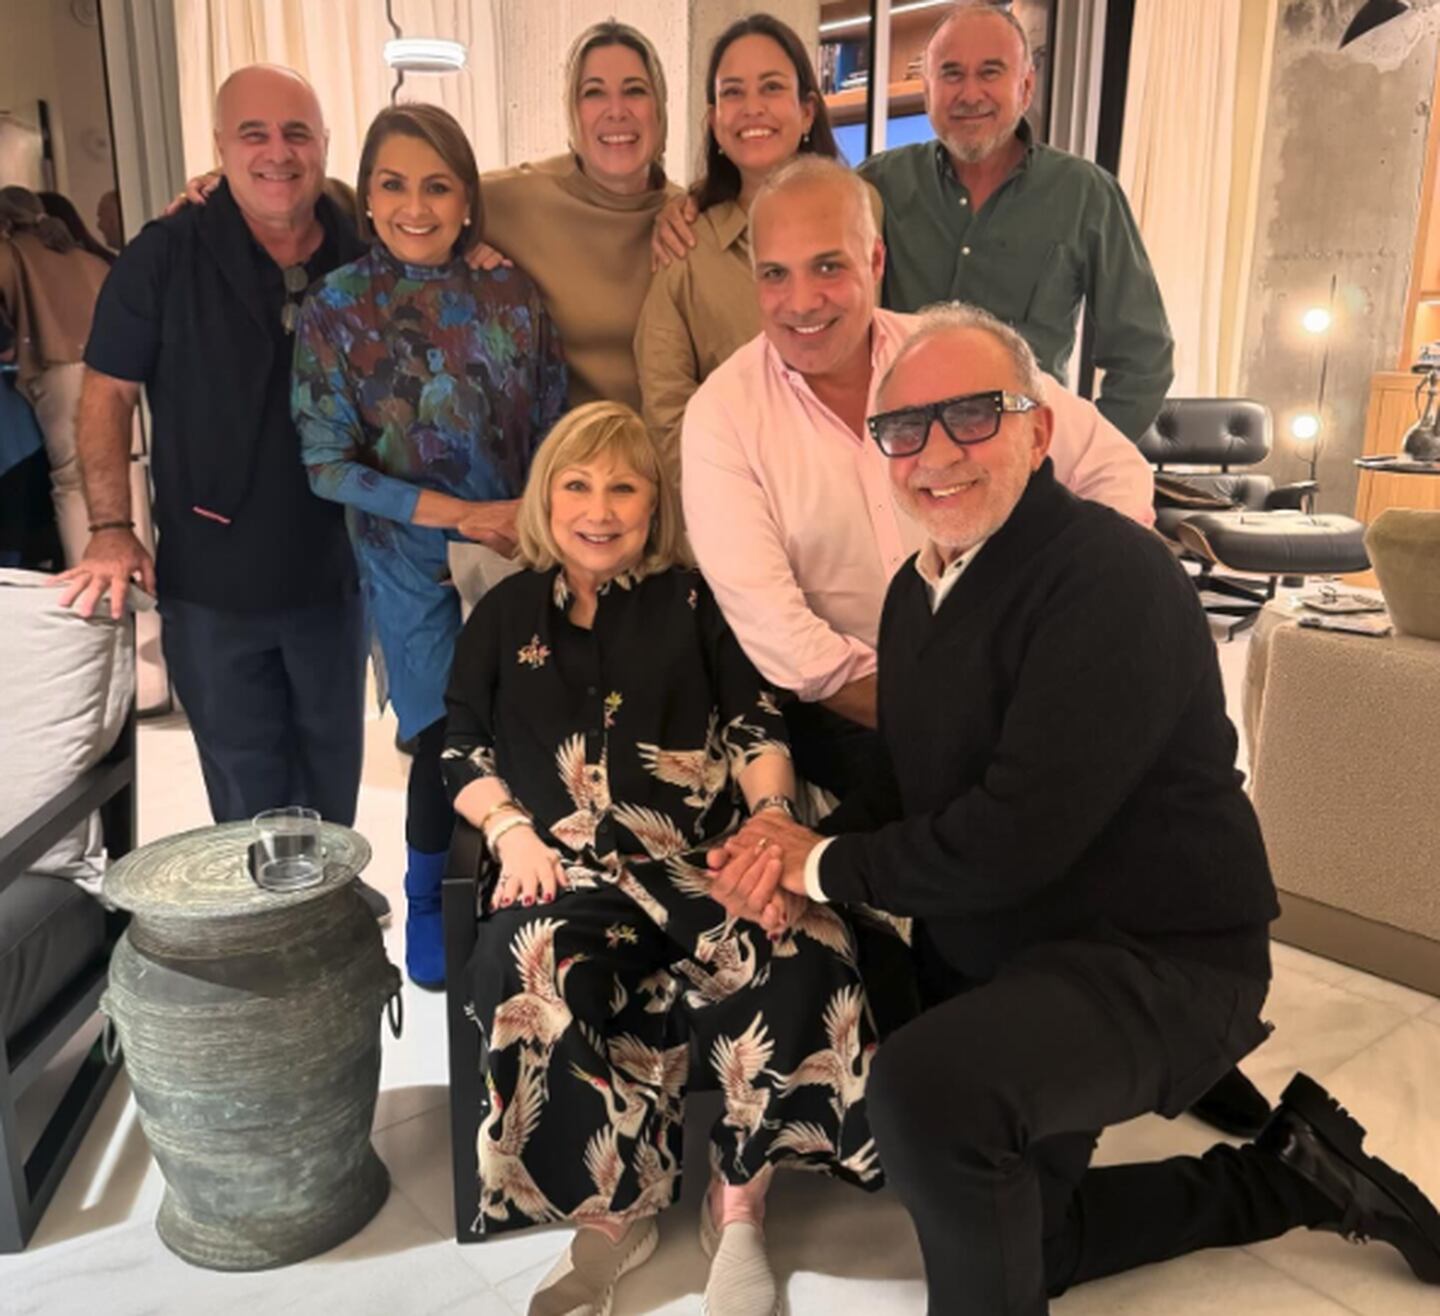 Cristina Saralegui, de 75 años, recibió en su casa la visita de varios amigos, entre ellos el productor Emilio Estefan.